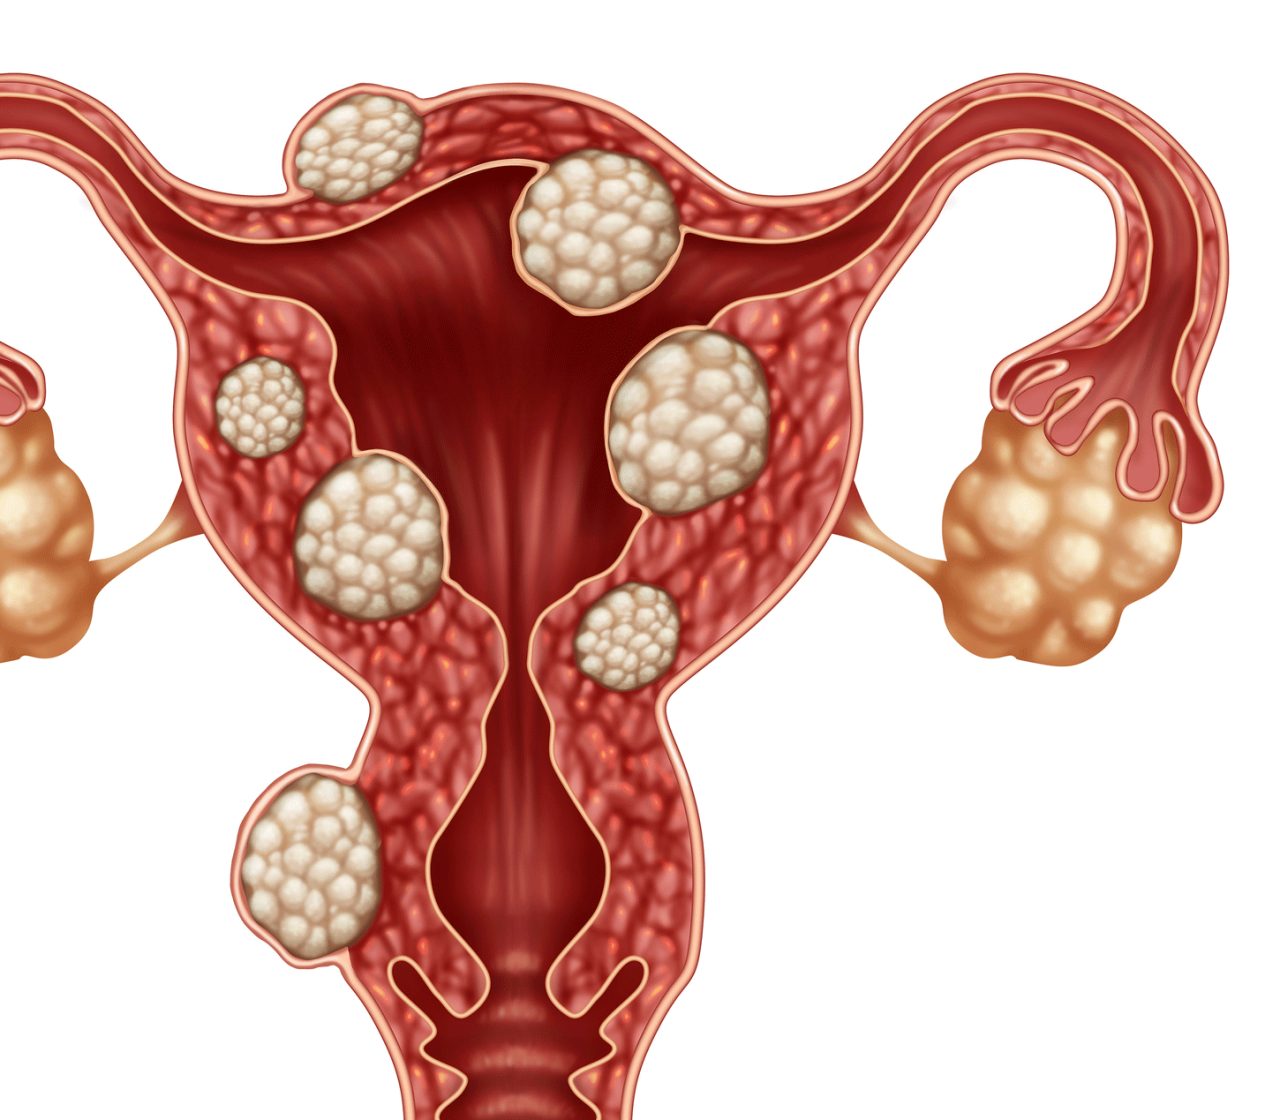 Symptoms of Uterine Fibroids